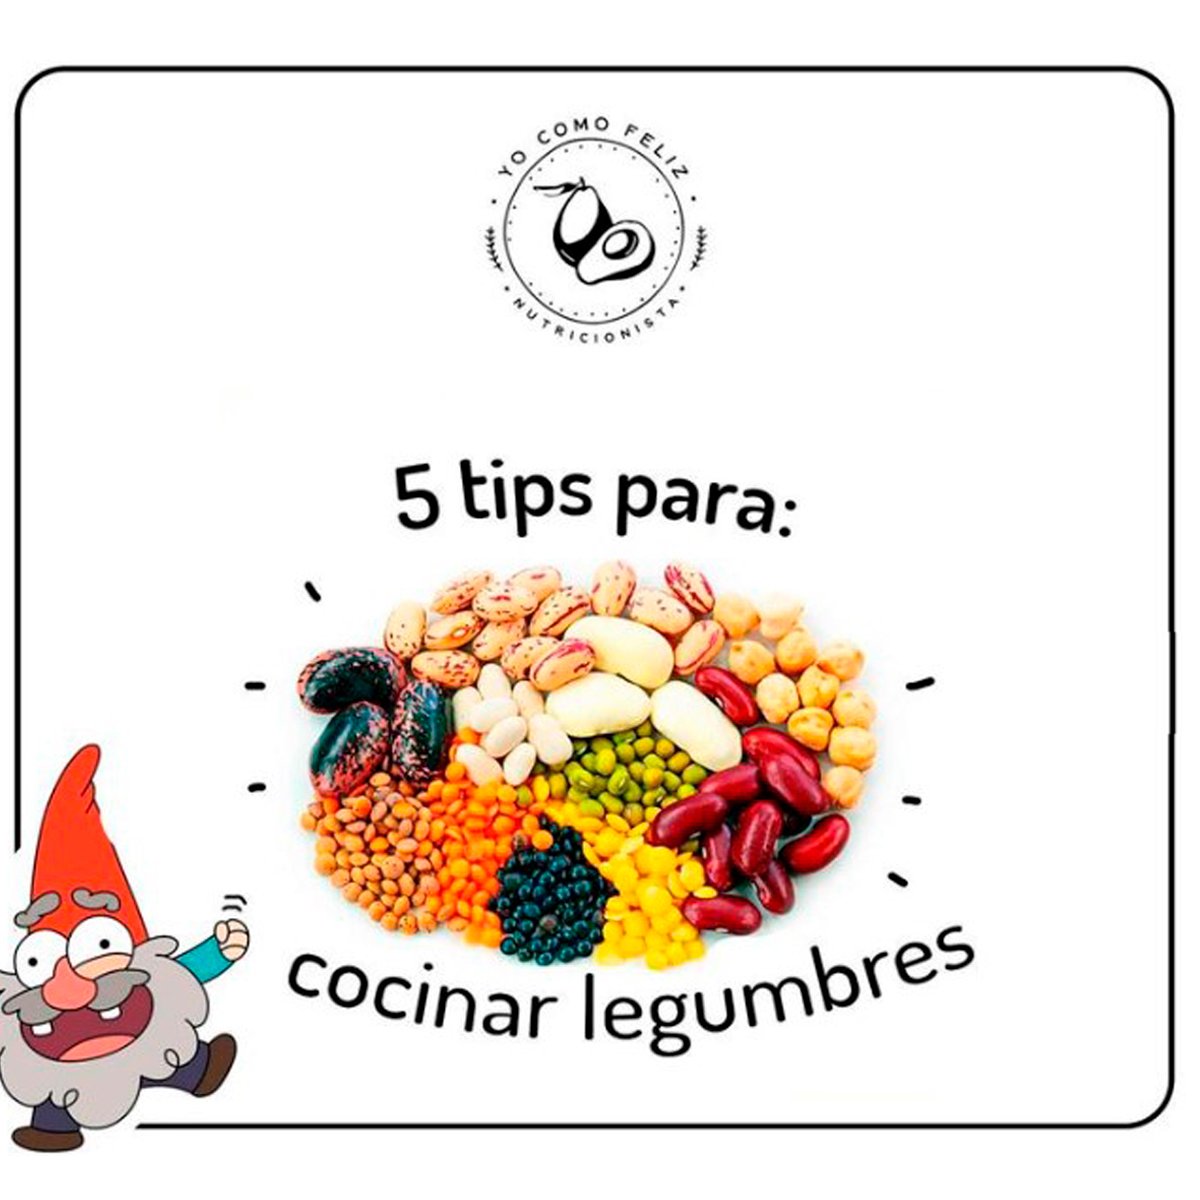 5 tips para cocinar legumbres